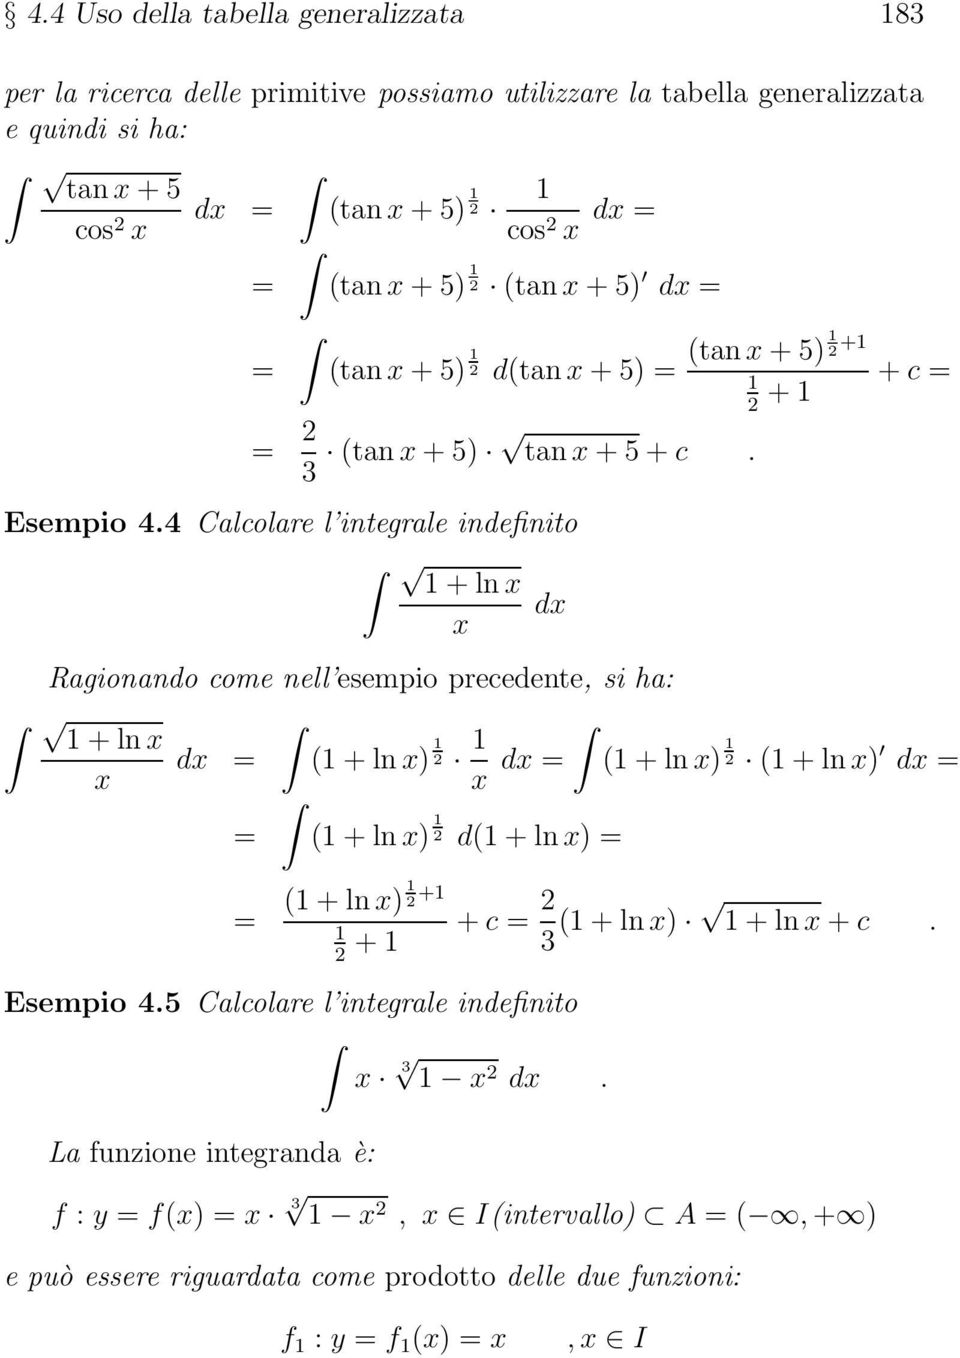 4 Calcolar l intgral indfinito + ln Ragionando com nll smpio prcdnt, si ha: + ln d = ( + ln ) 2 d = ( + ln ) 2 ( + ln ) = ( + ln ) 2 d( + ln ) = d d = = ( + ln )